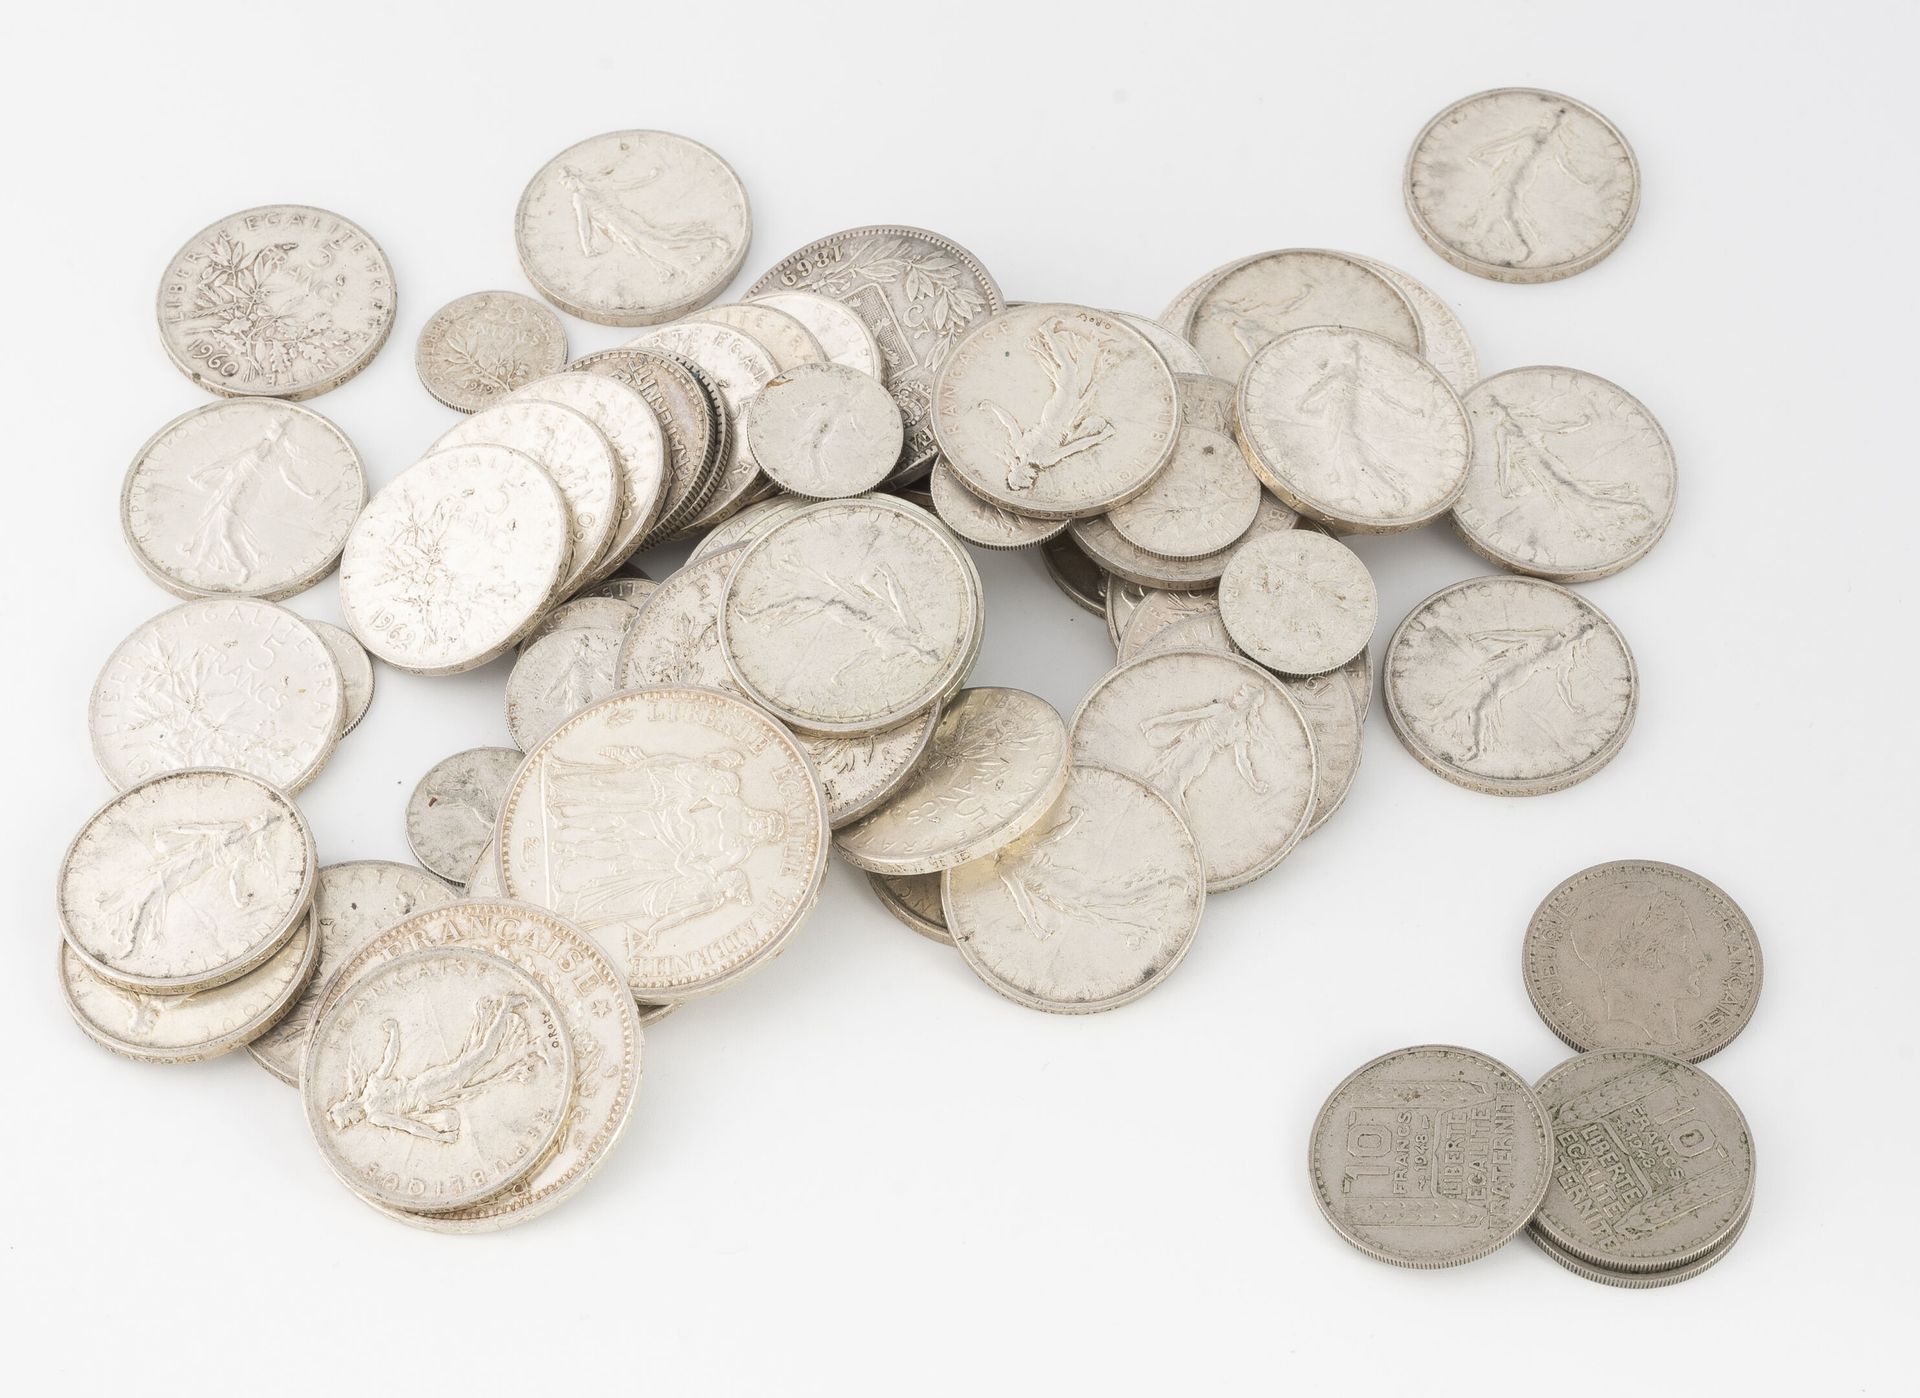 FRANCE, BELGIQUE, ALLEMAGNE 一批法国银币，包括50法郎、10法郎、5法郎、50生丁、德国10马克和5马克以及比利时5法郎。 
总重量&hellip;